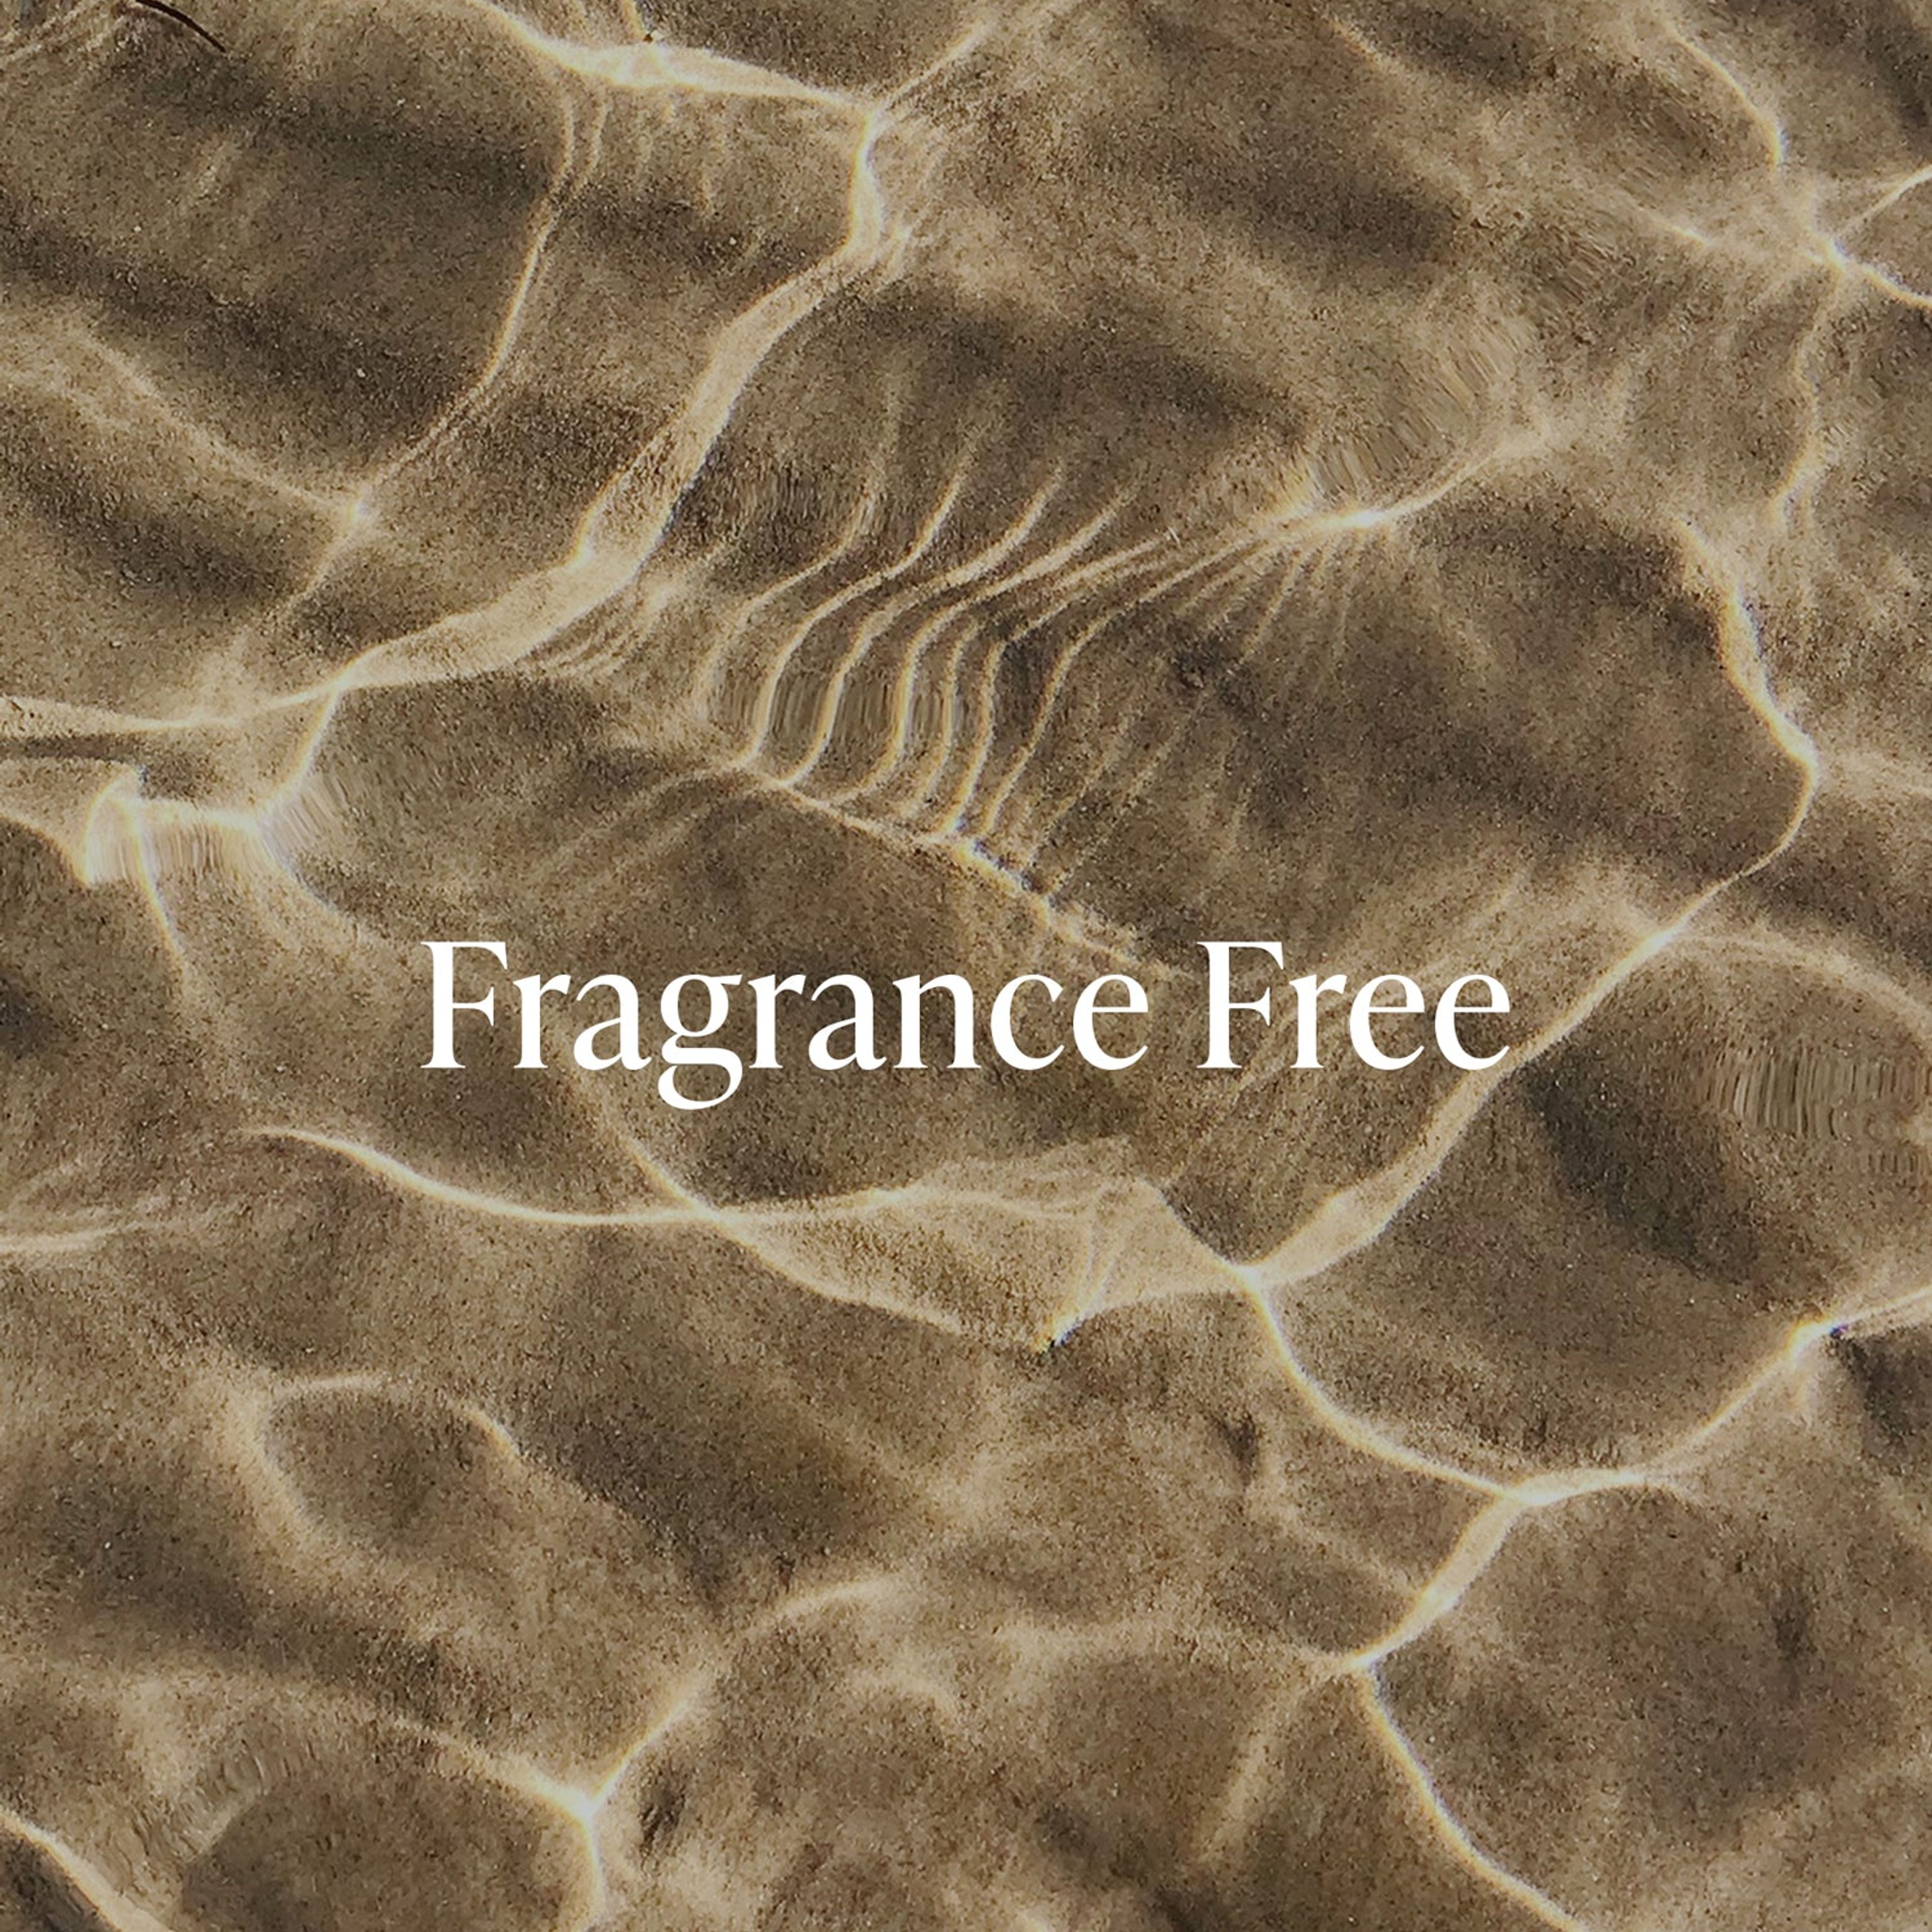 Fragrance Free - Body Wash